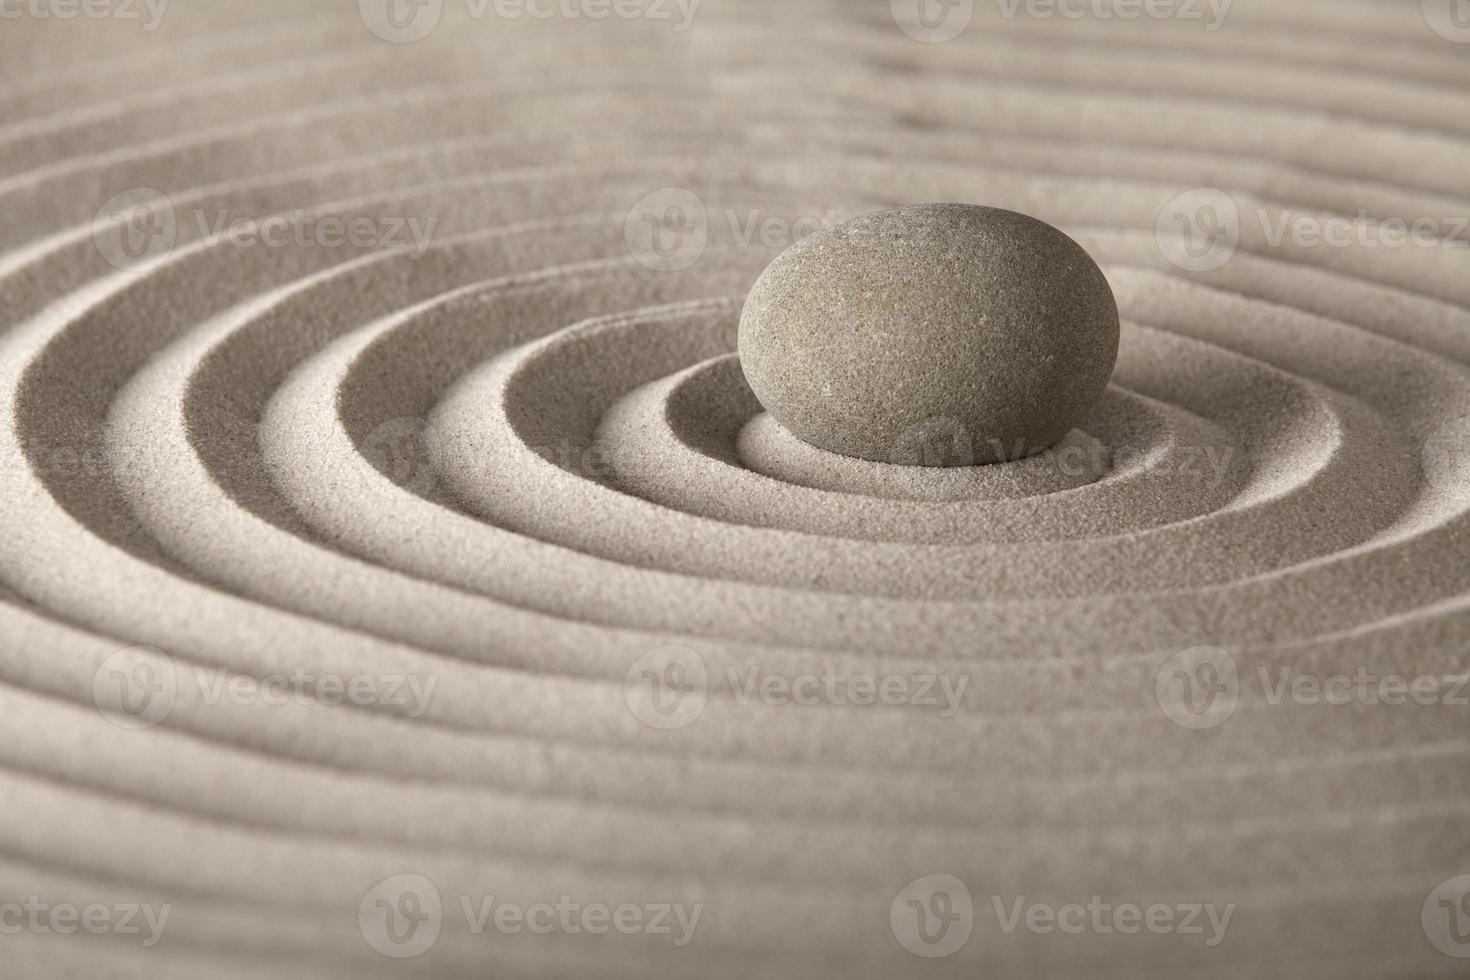 pierre de méditation zen photo